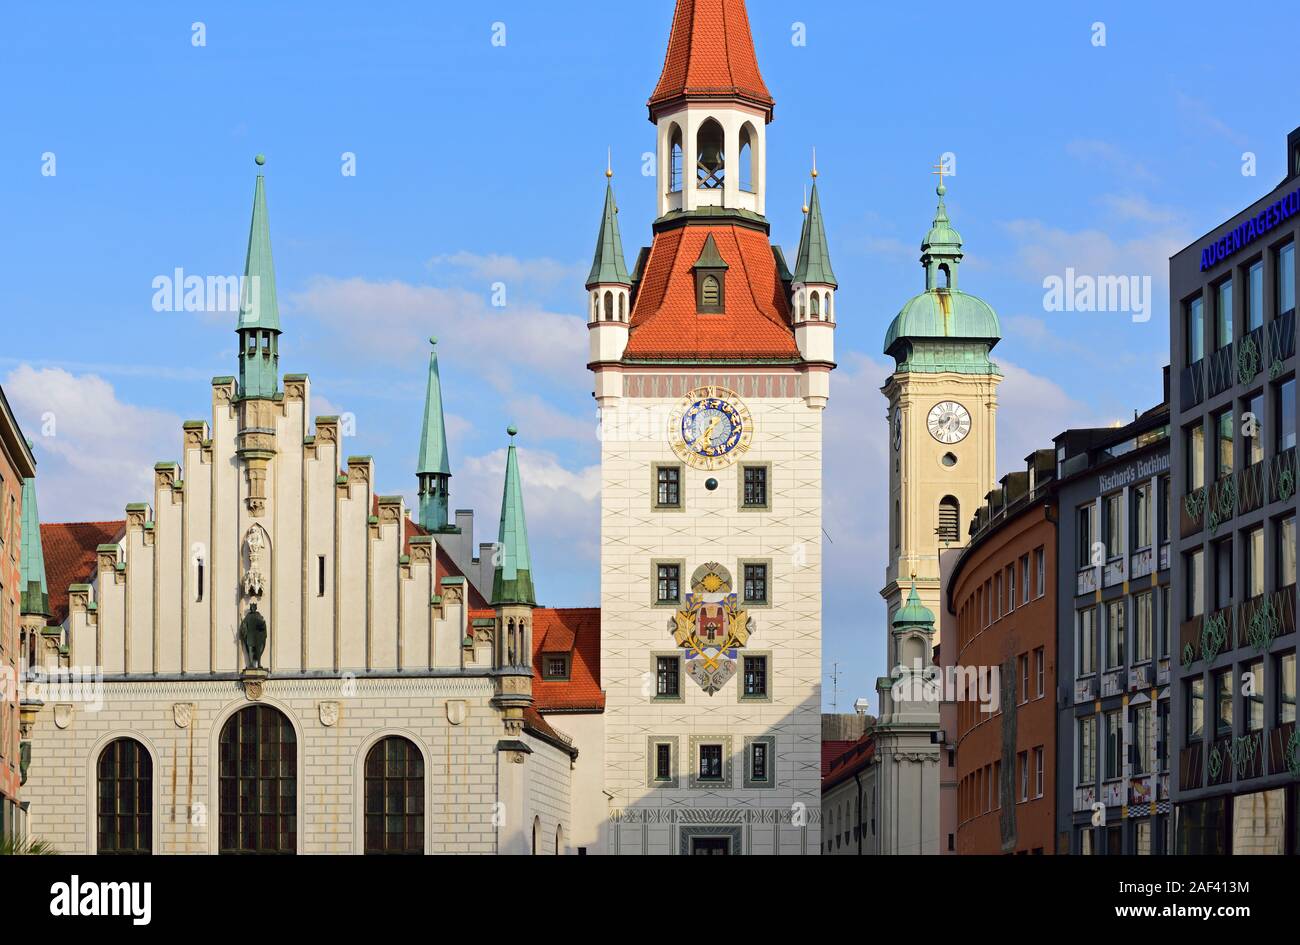 Europa, Deutschland, Bayern, Landeshauptstadt München, City, Marienplatz, Altes Rathaus, Rathausturm, Stock Photo